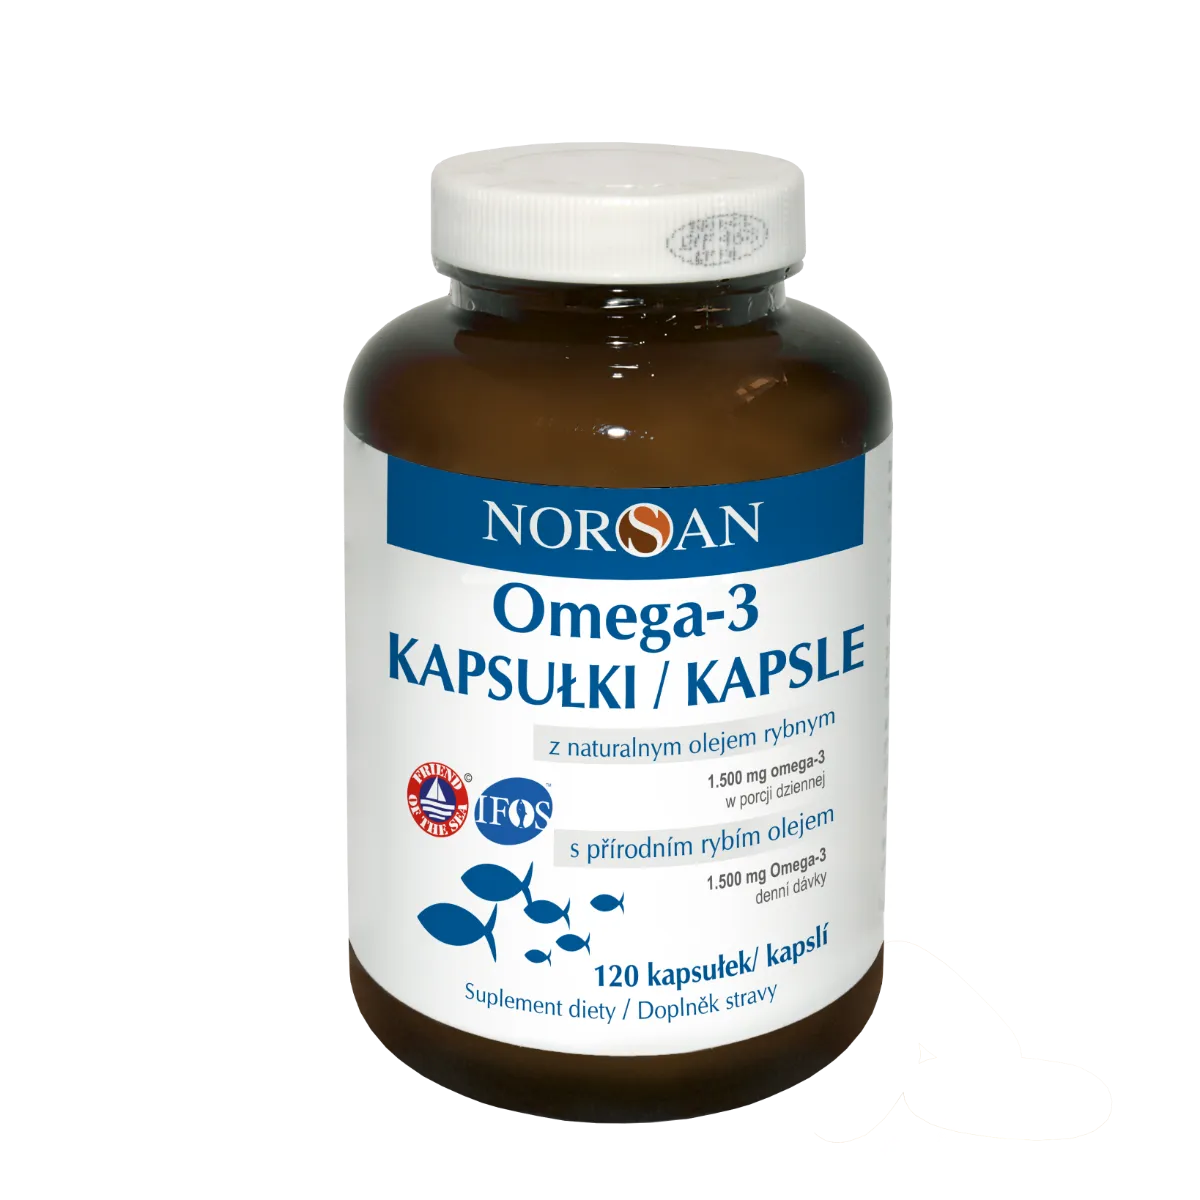 Norsan Omega-3 kapsułki z naturalnym olejem rybim i ekstraktem z rozmarynu, 120 kapsułek